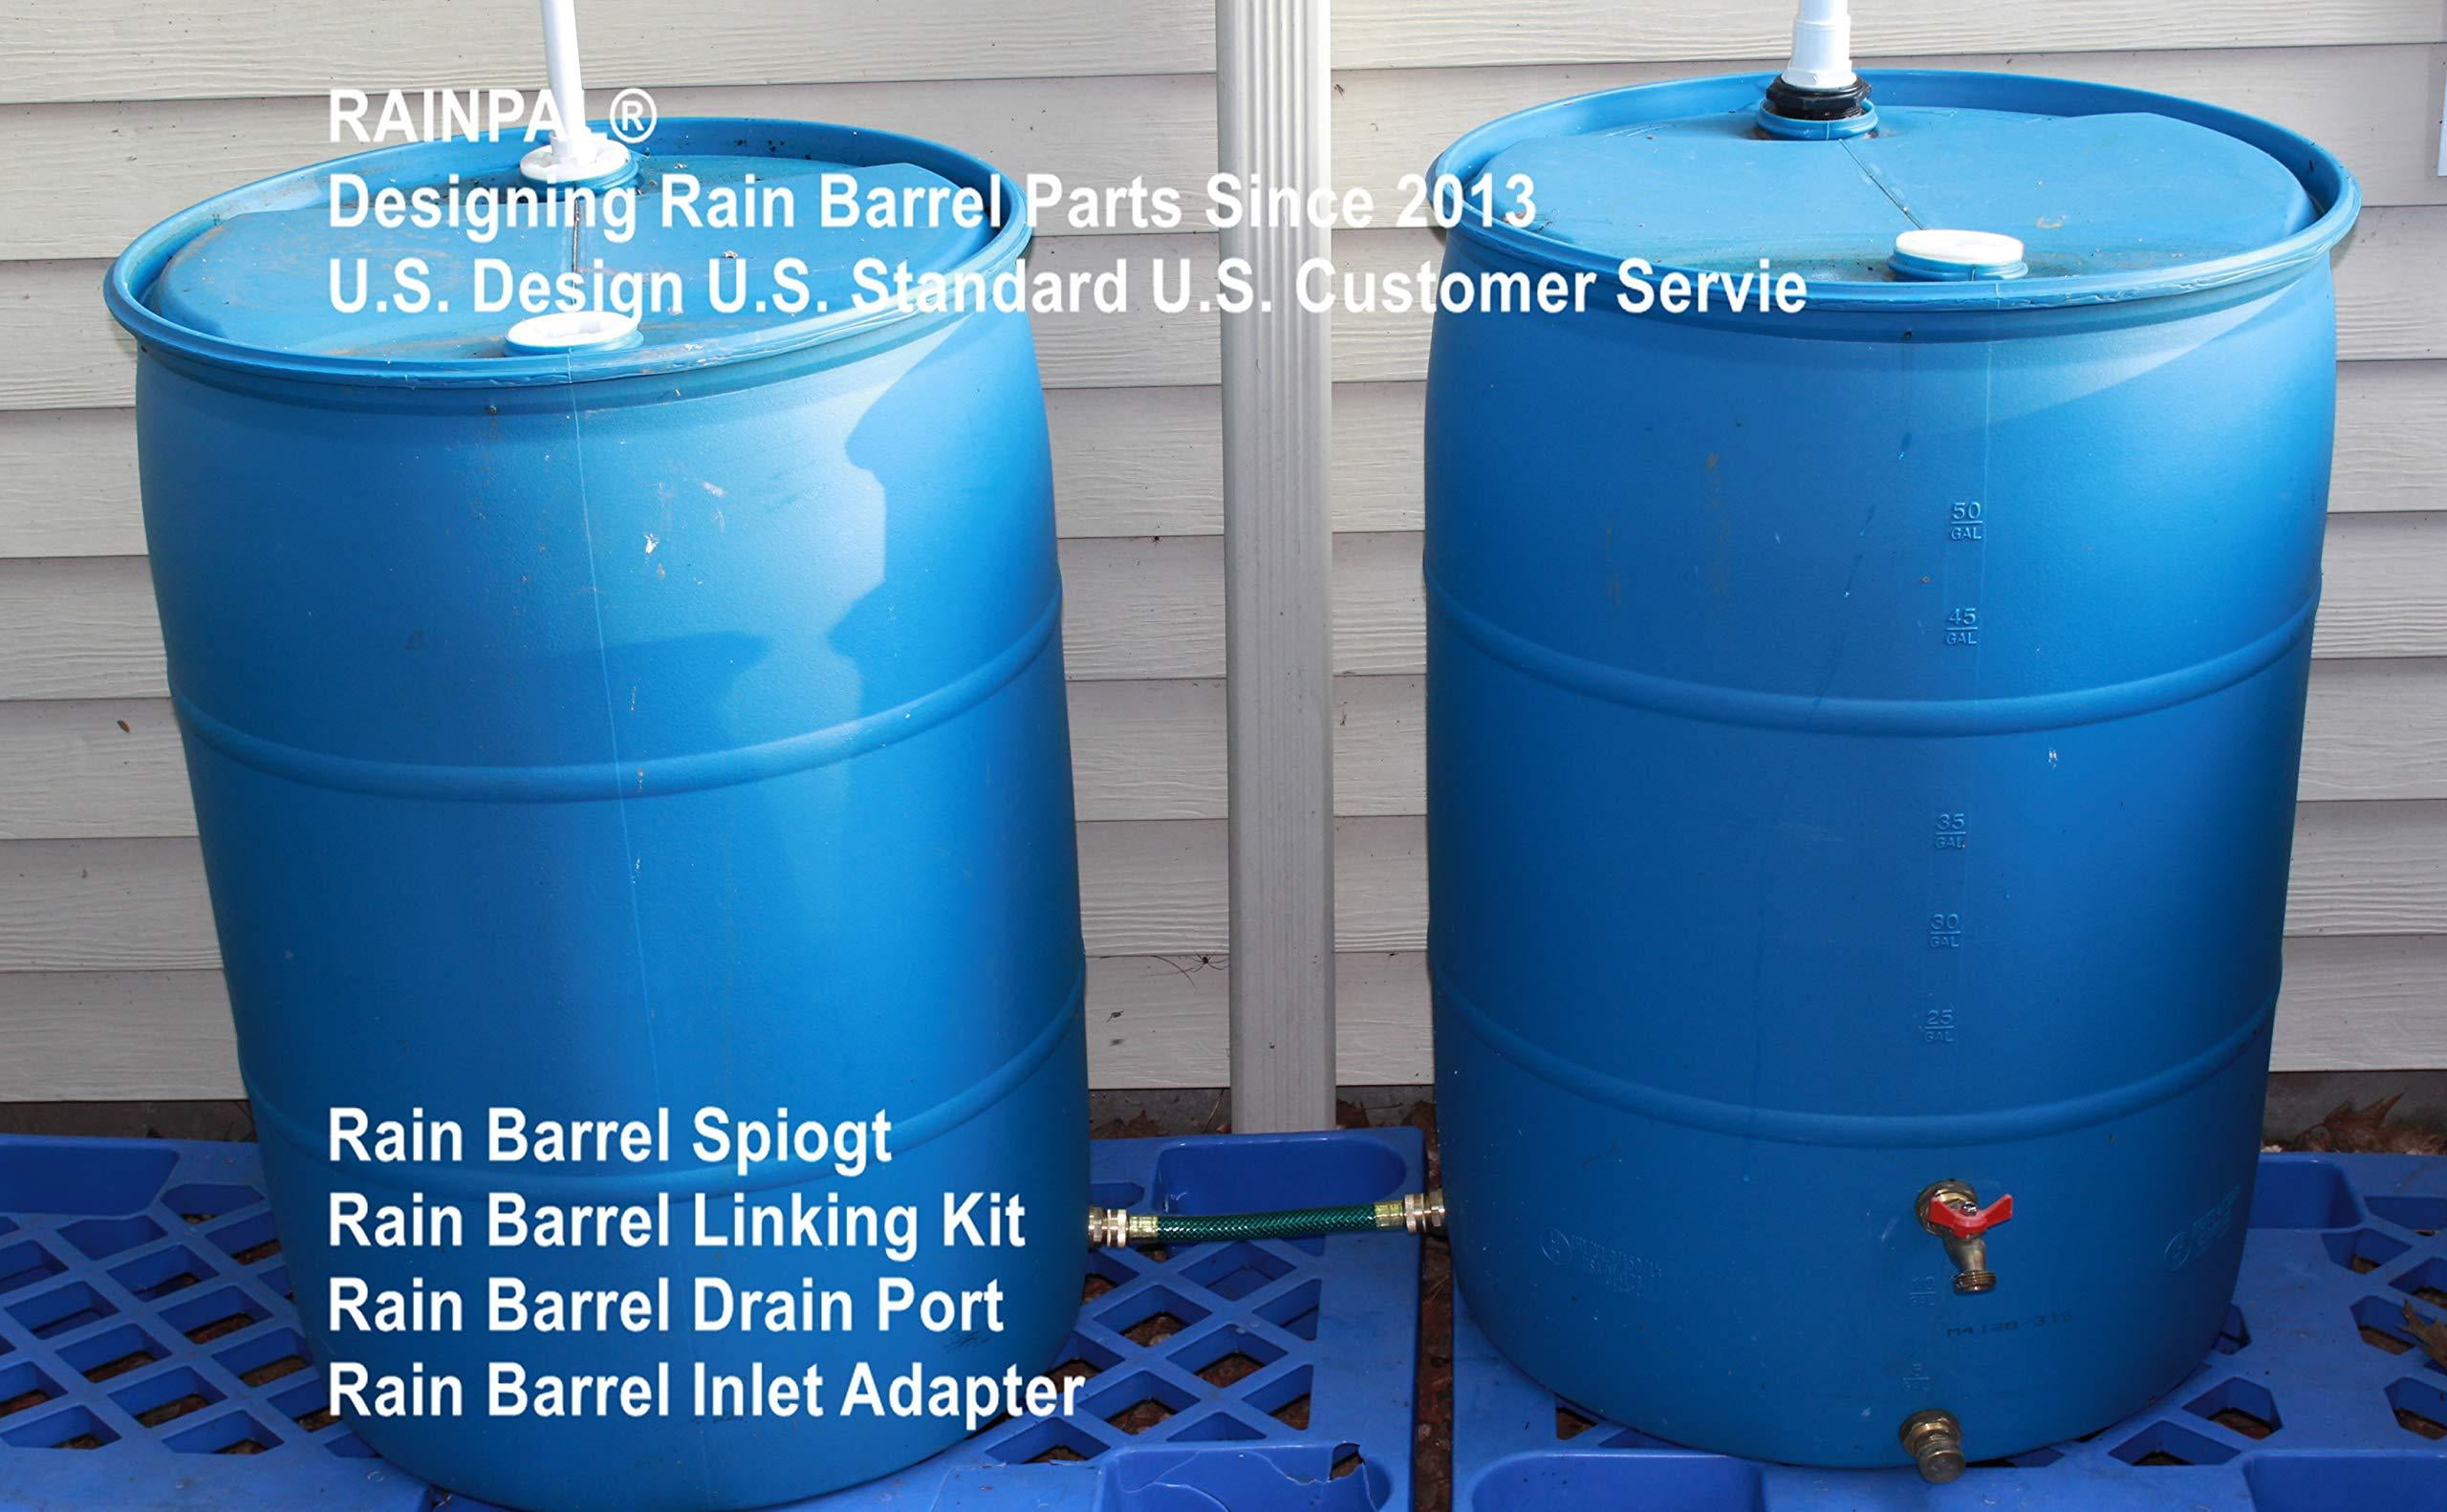 RAINPAL RBL022P Premium Rain Barrel Linking Kit Two Brass Bulkhead Fittings and One 2 FT 3/4 I.D. Hose 